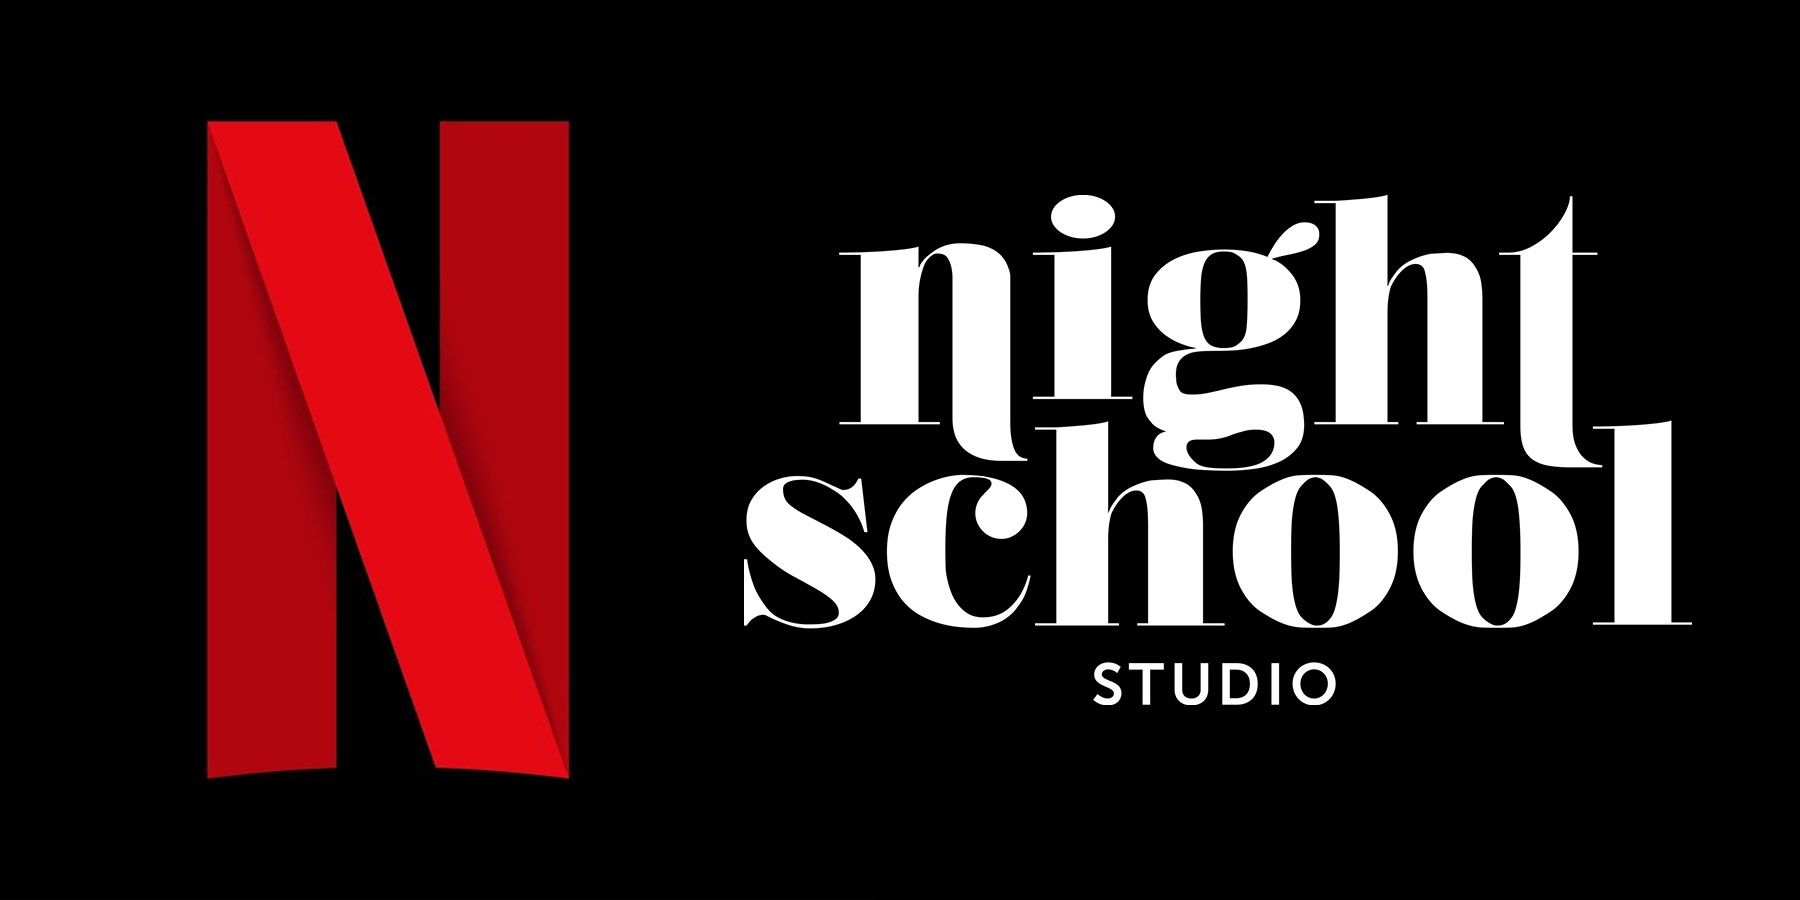 Netflix’in Night School Studio’yu Satın Alması Yayıncılık Tutkuları İçin İyiye İşaret